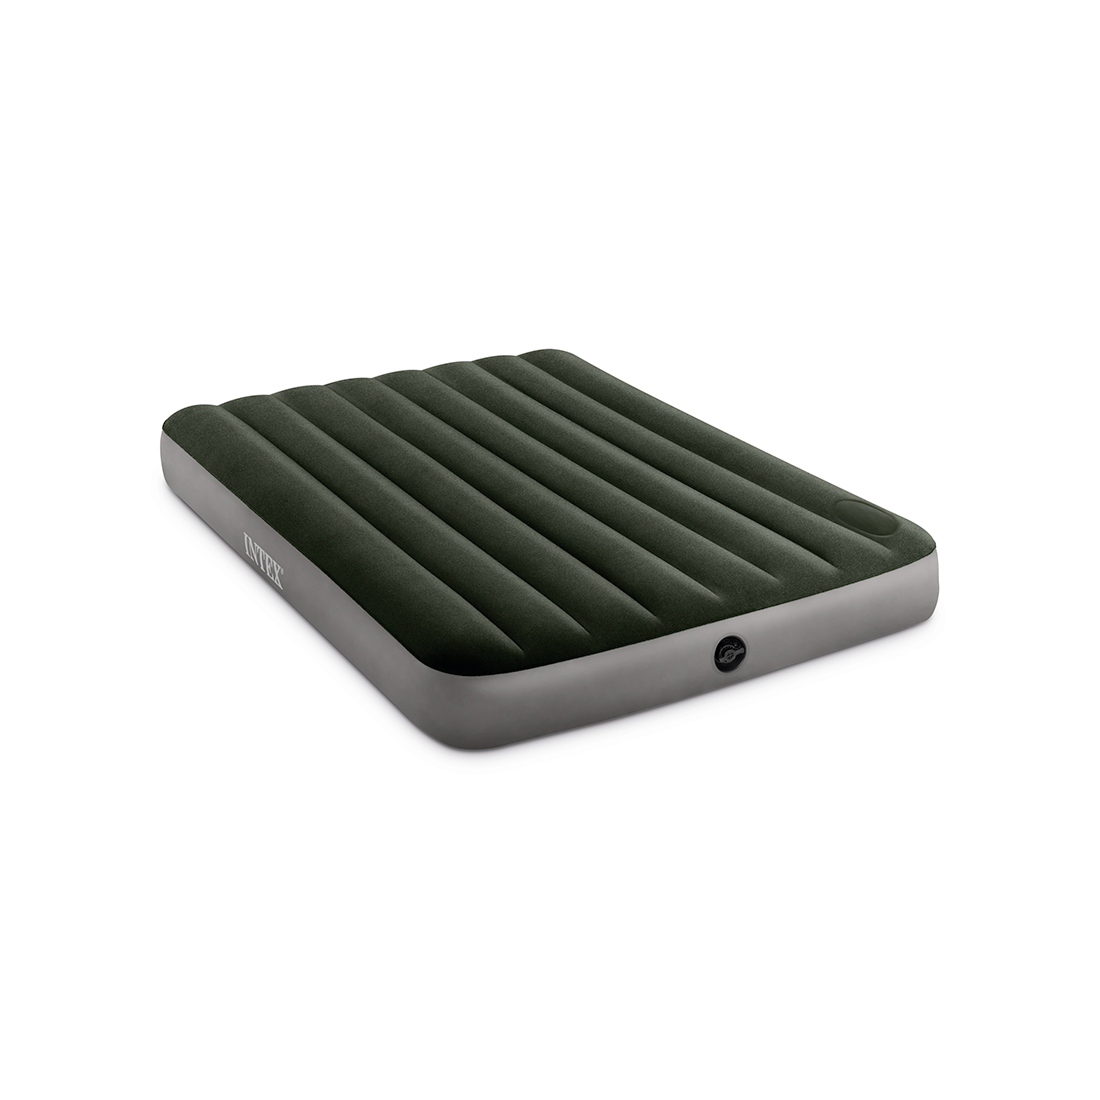 Матрас надувной Dura-Beam Downy Airbed (Full) 191 х 137 х 25 см, INTEX, 64762, Винил, Флокированый верх, Встроенный ножной насос, Технология Fiber-Tech, Зелёный, Цветная коробка